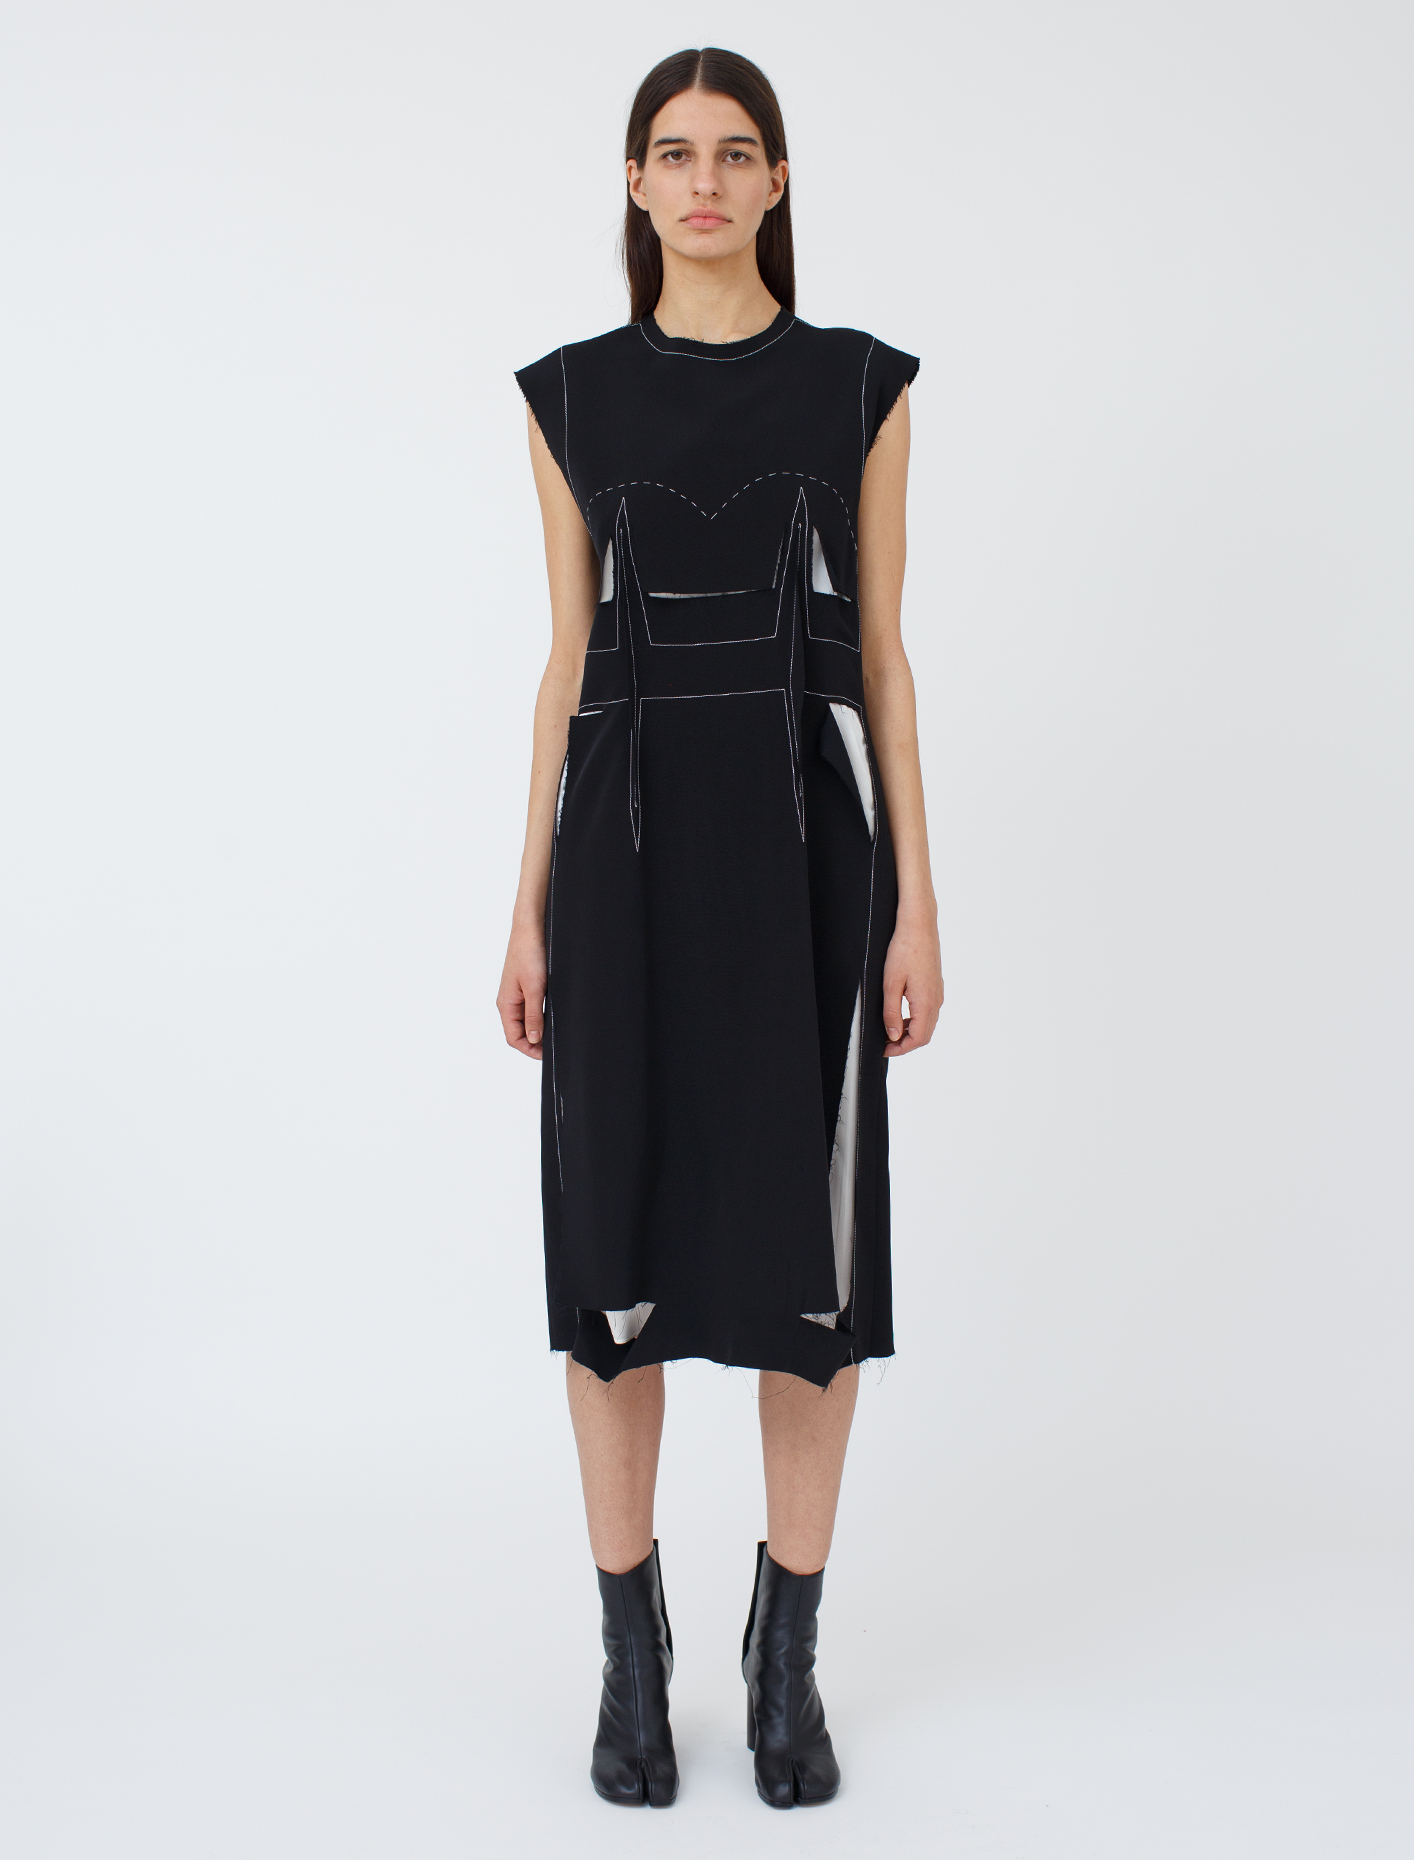 Maison Margiela Dress in Black | Voo Store Berlin | Worldwide Shipping